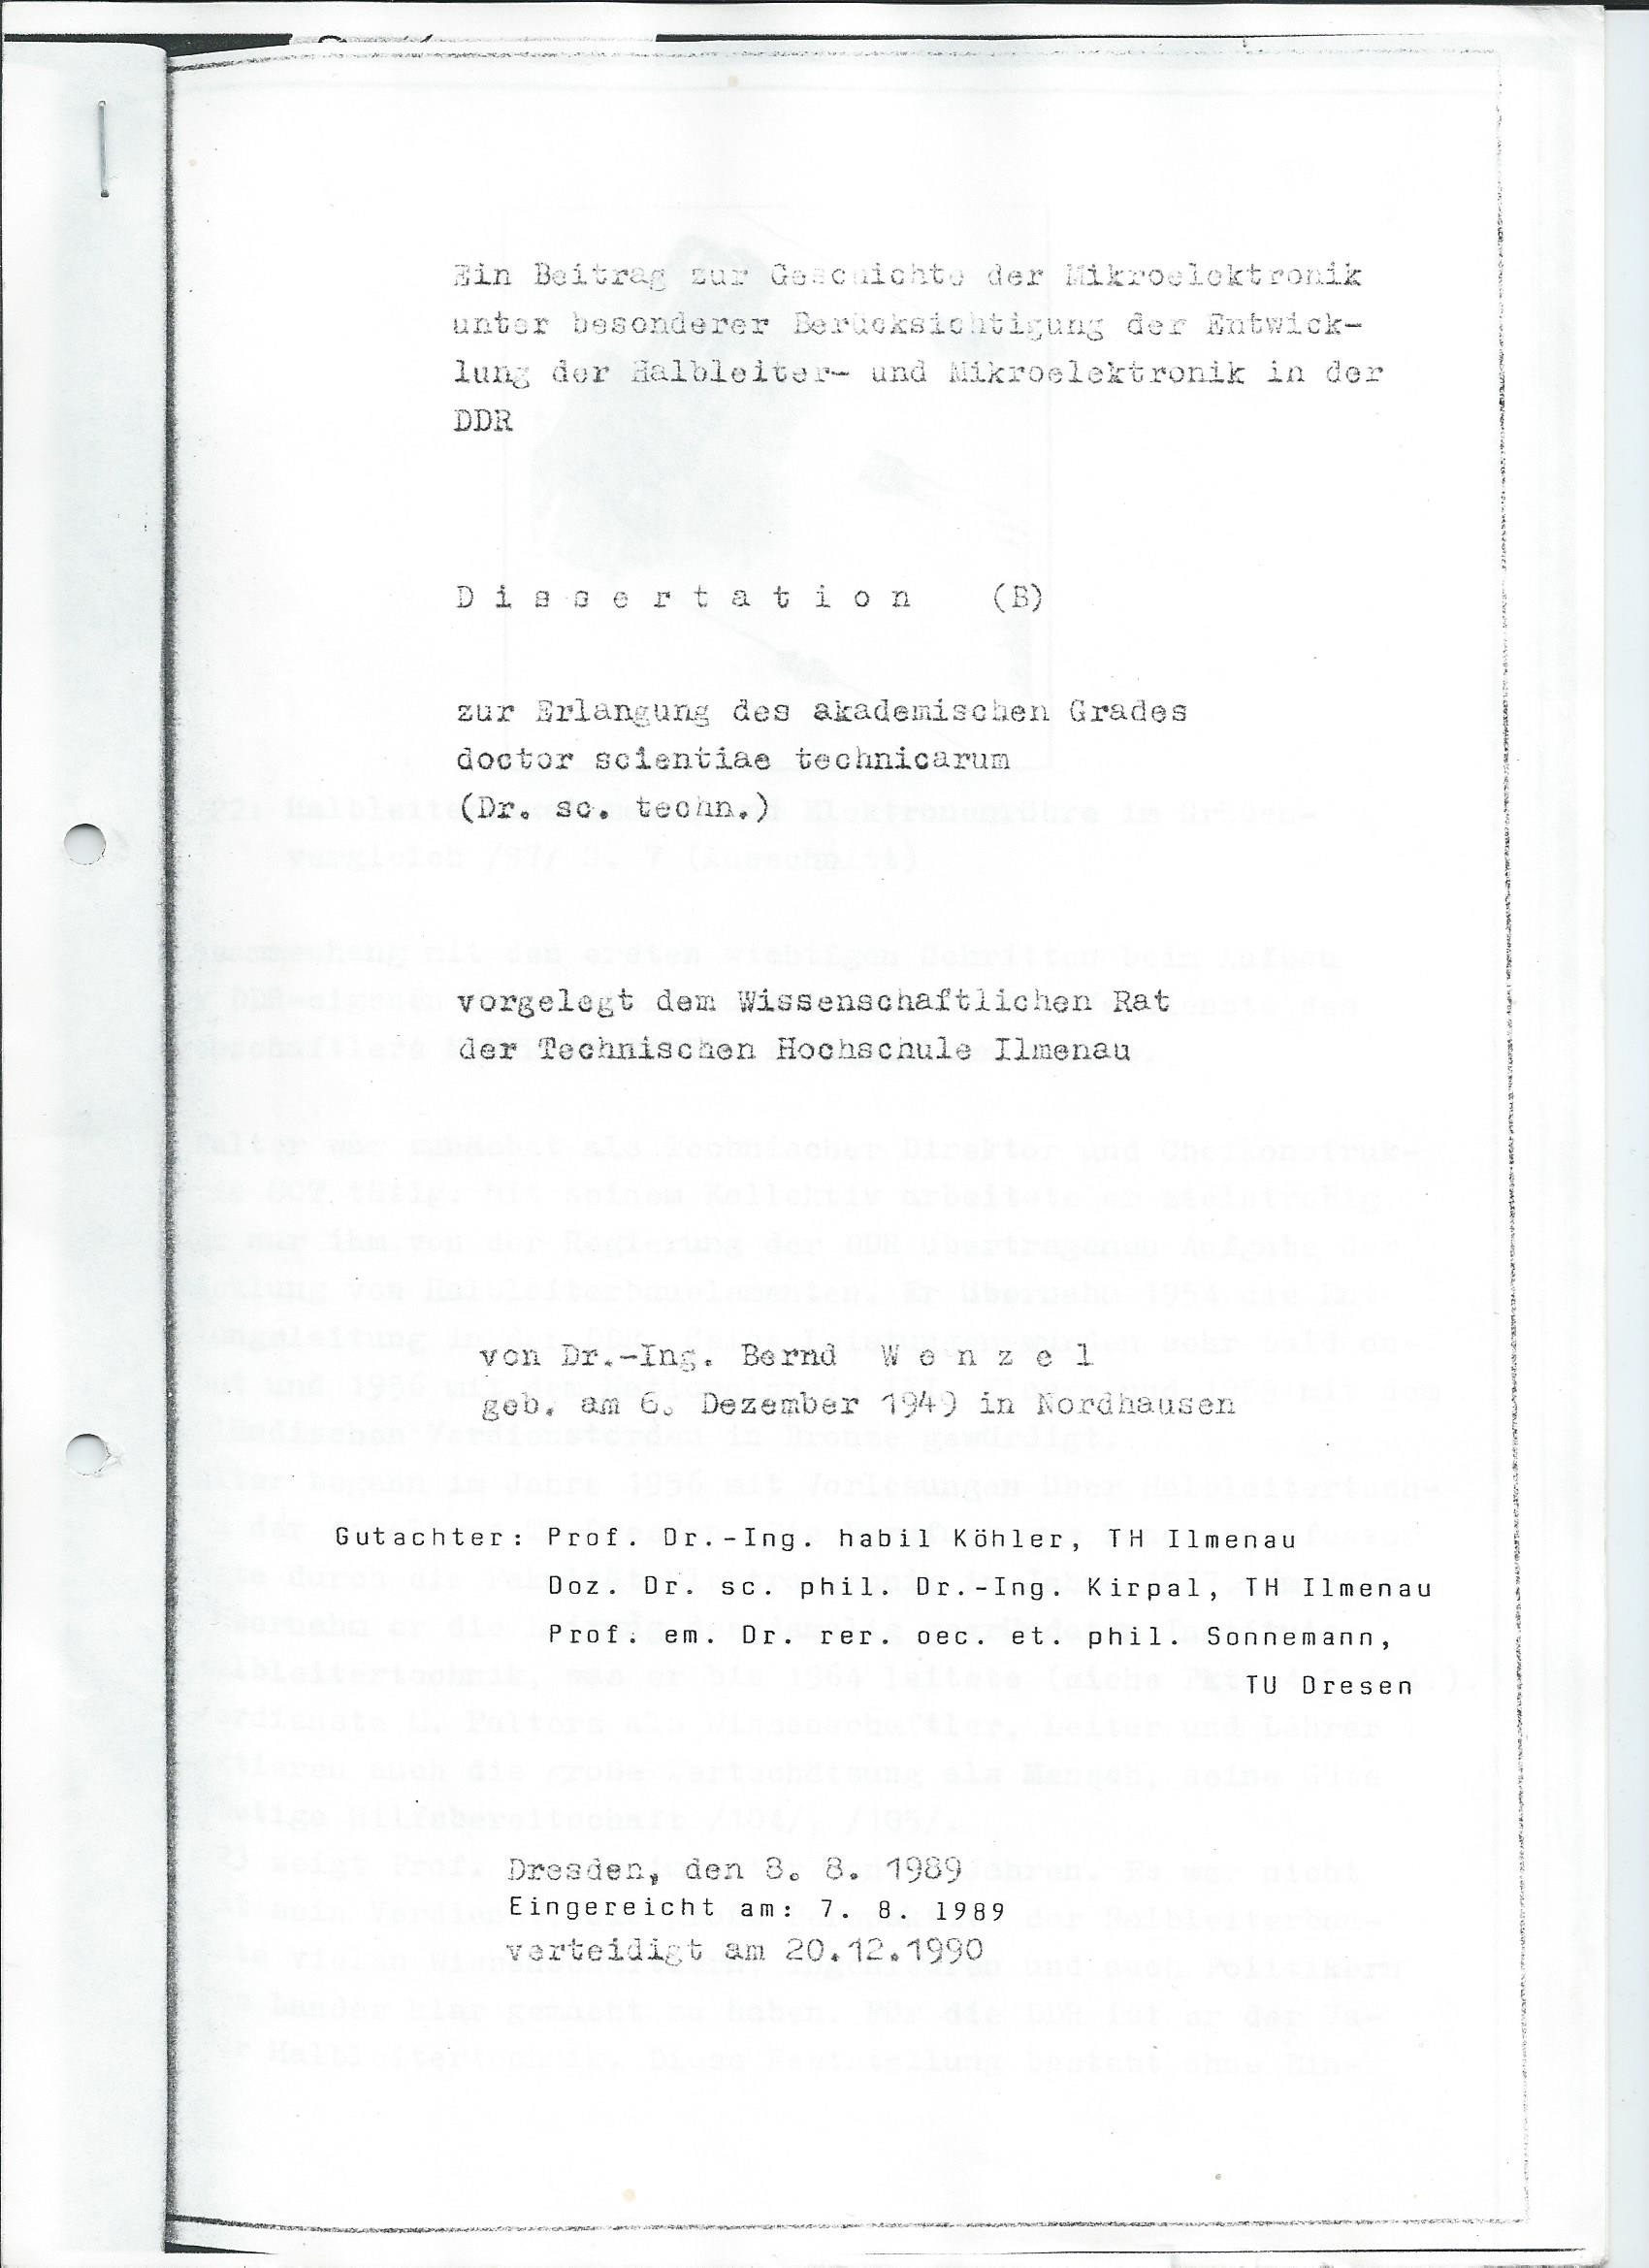 Auszug der Dissertation (B) von Bernd Wenzel 1989 (www.industriesalon.de CC BY-NC-SA)